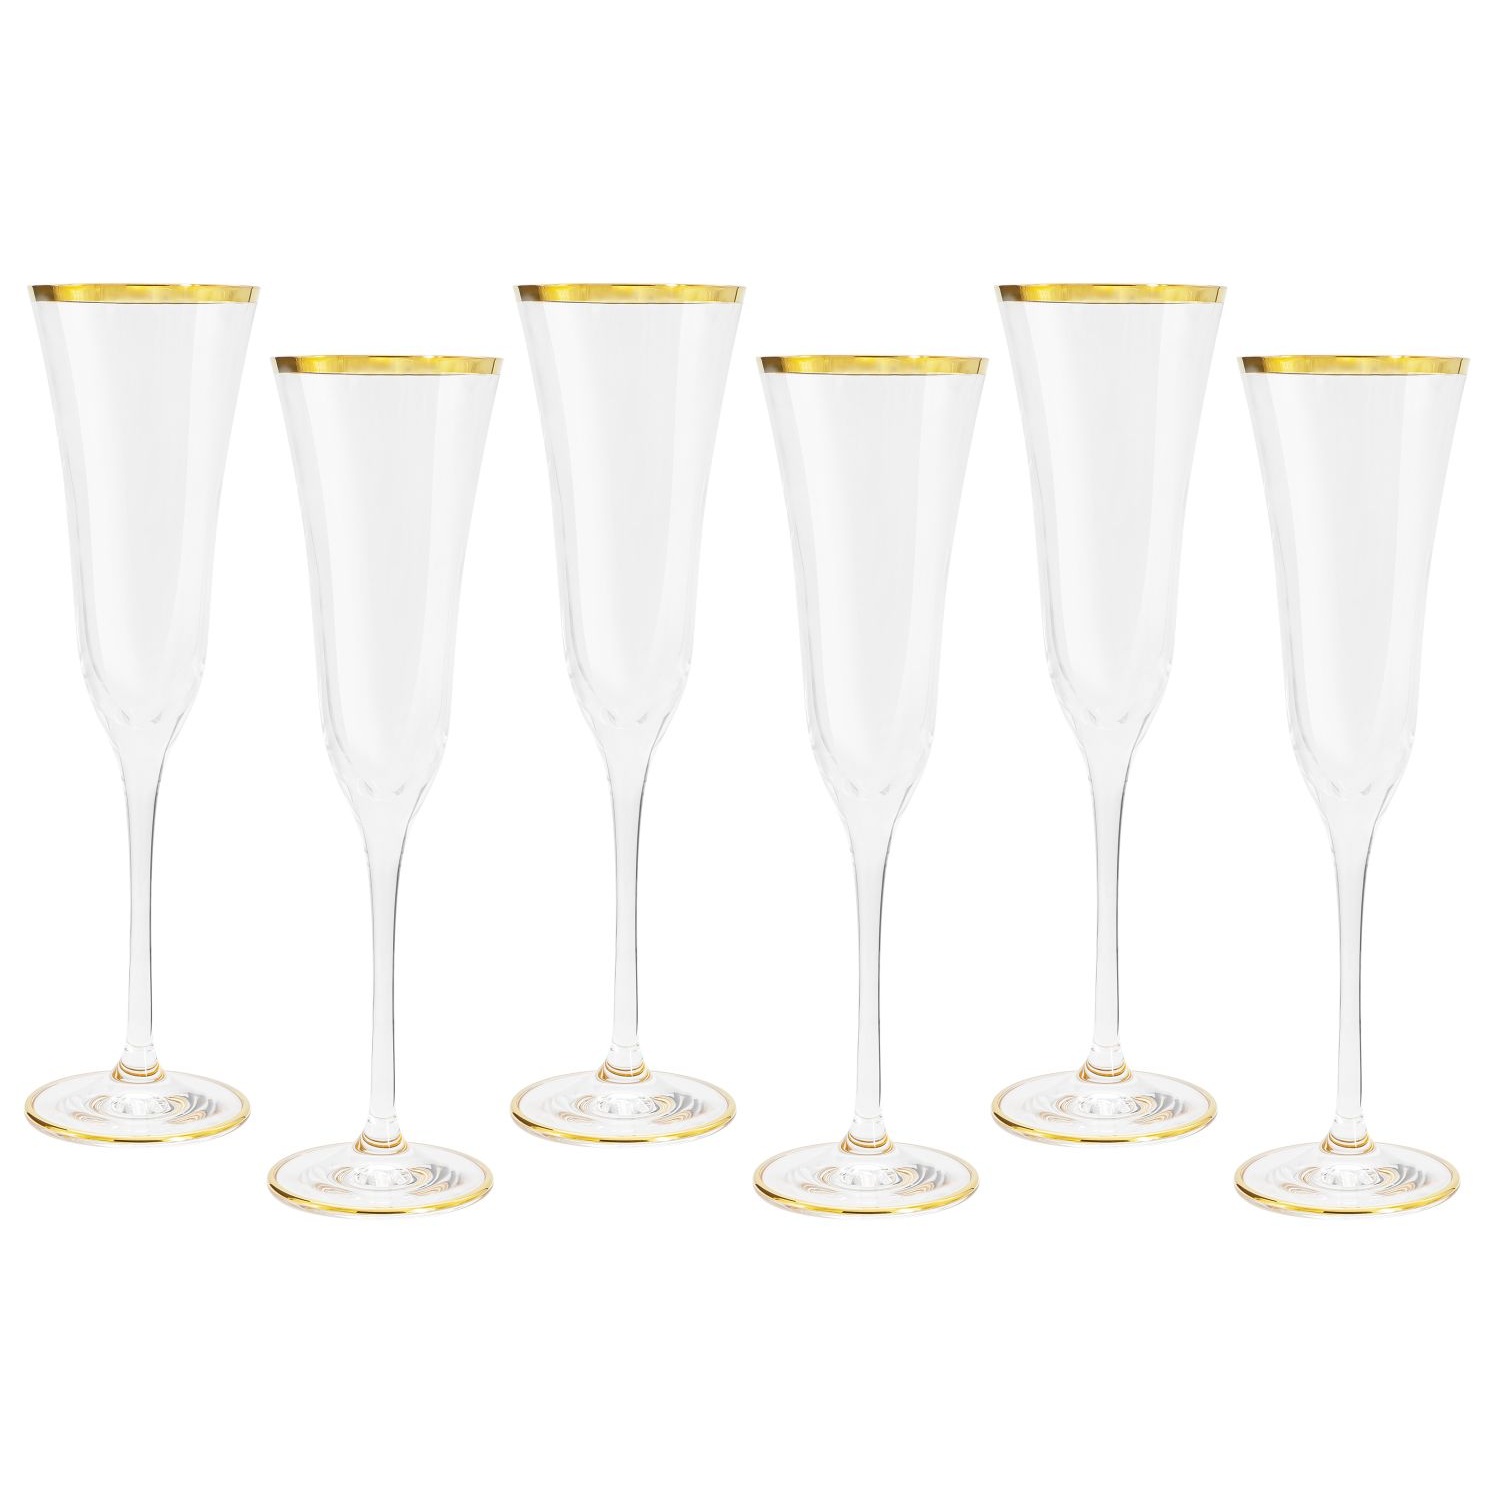 набор бокалов для шампанского same сабина золото 6 шт Набор бокалов для шампанского Same Сабина золото 6 шт